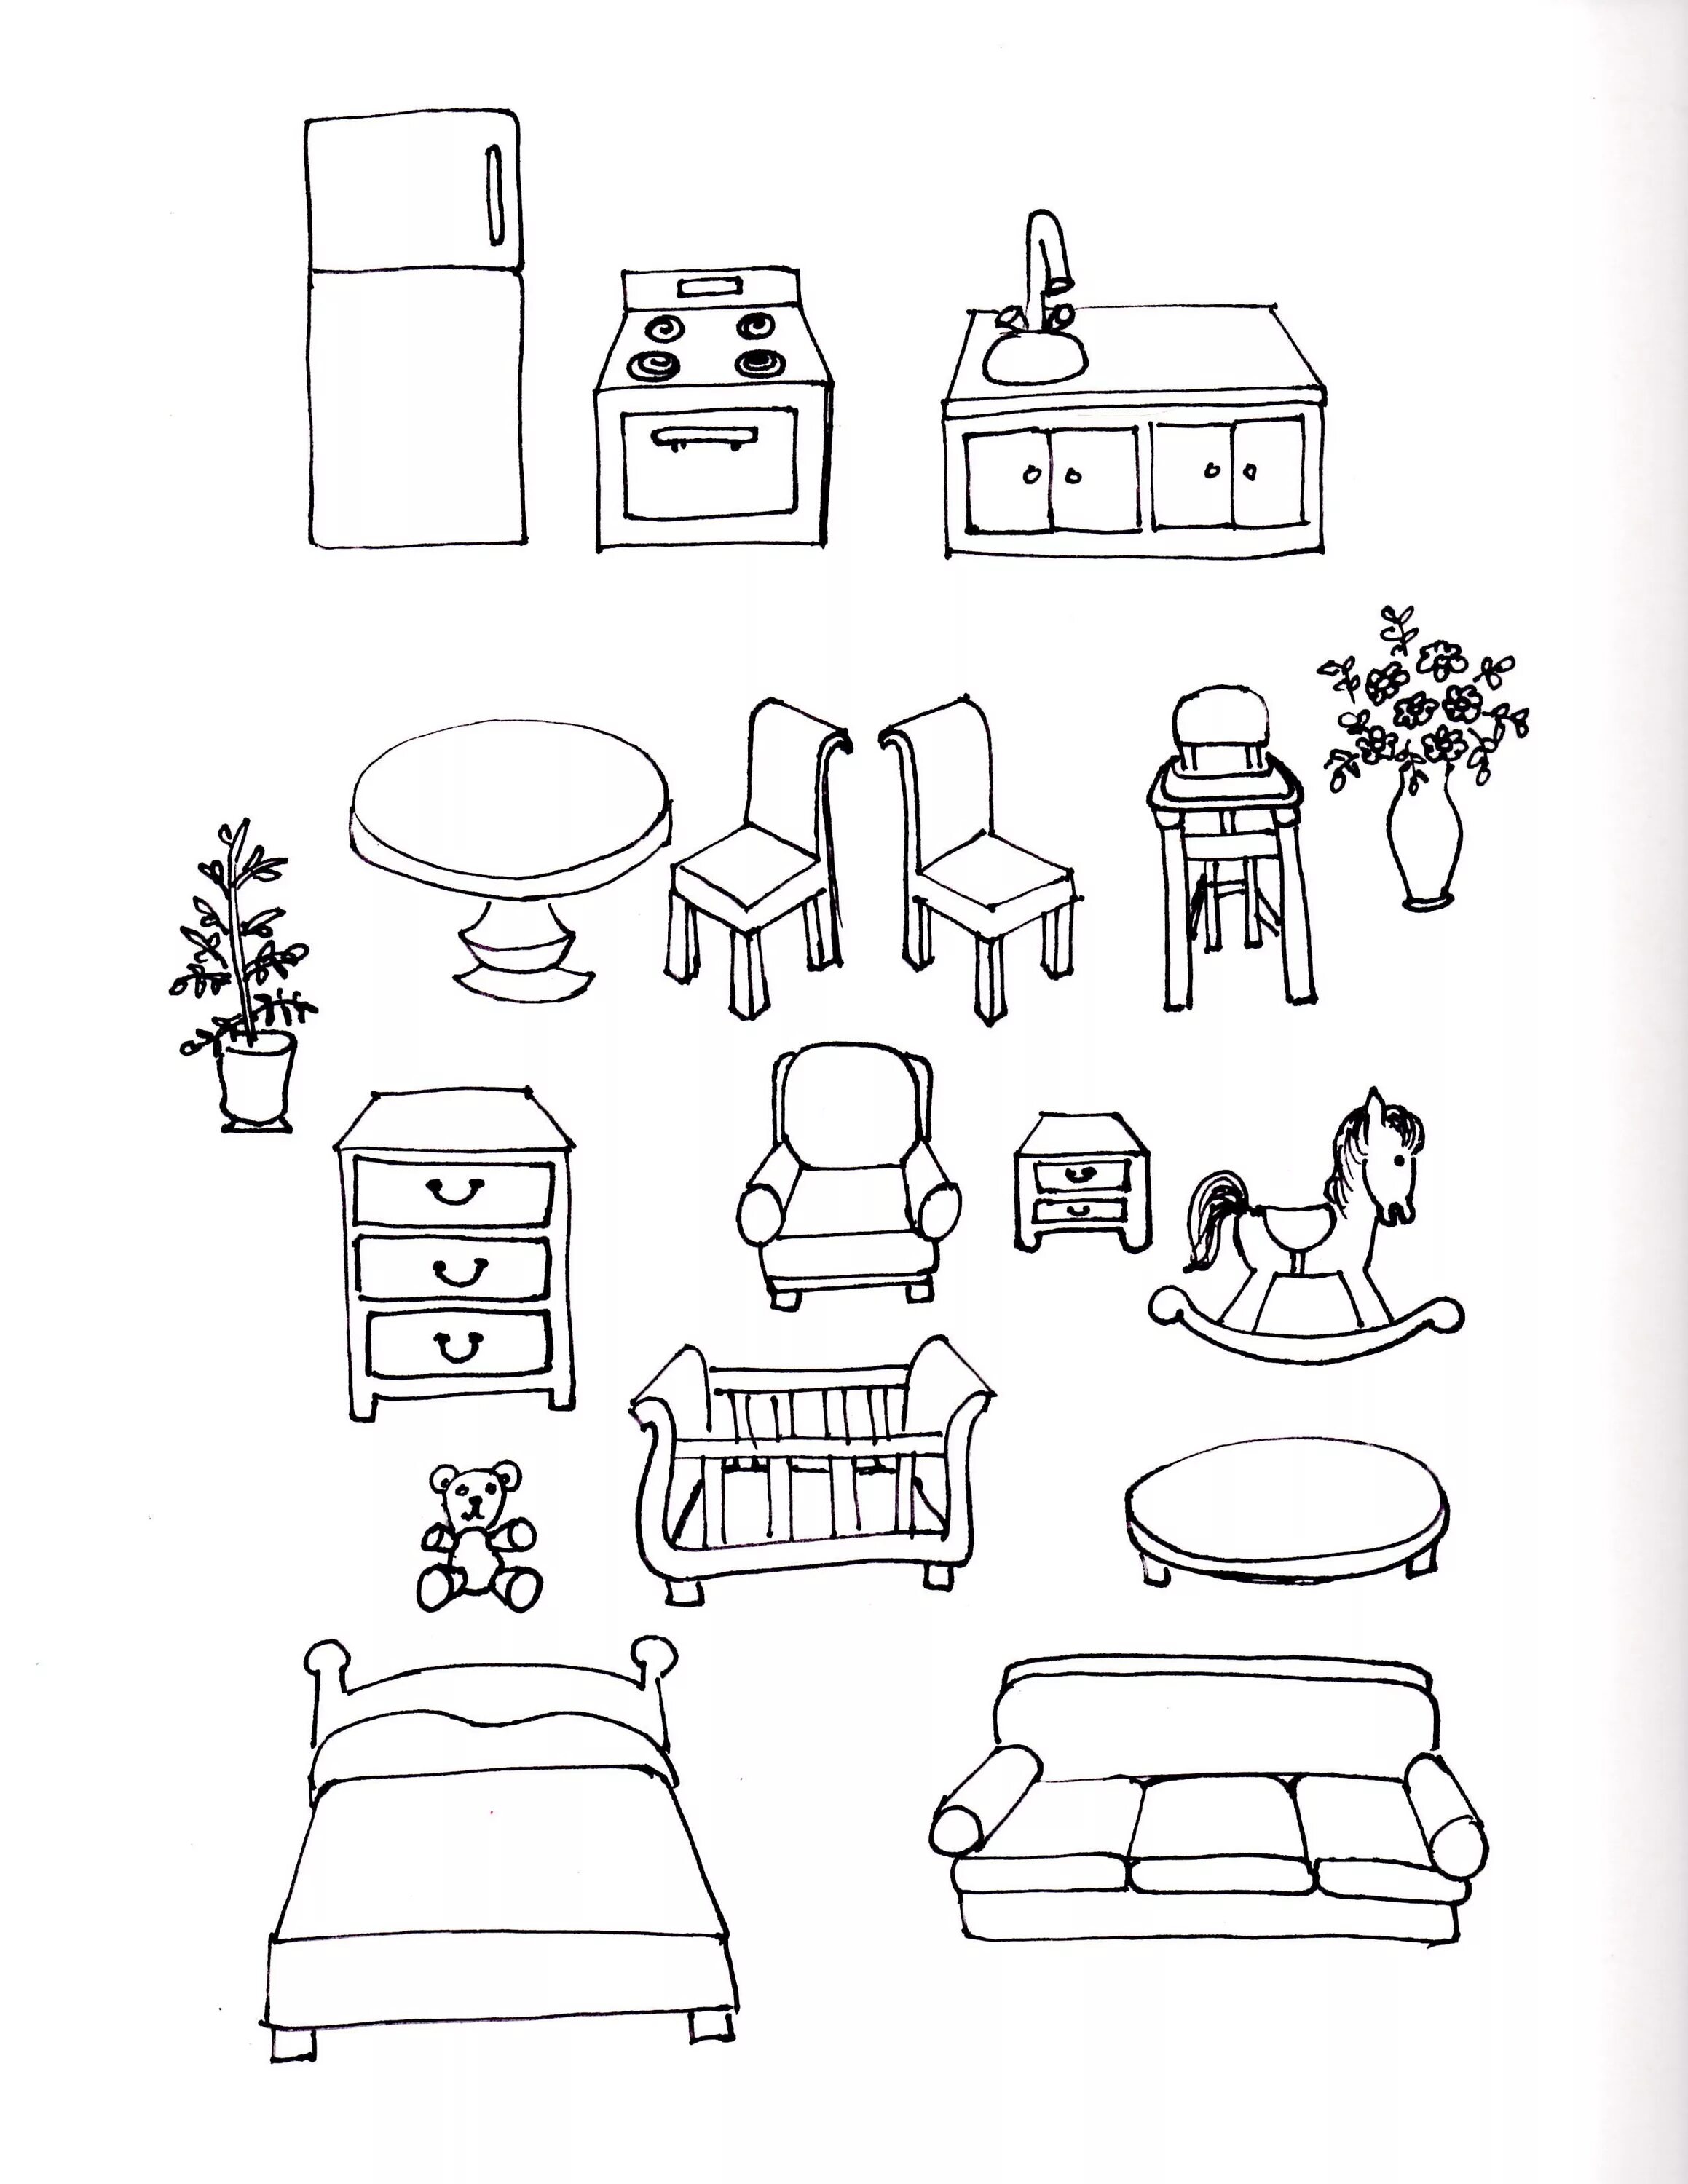 Children's furniture #4